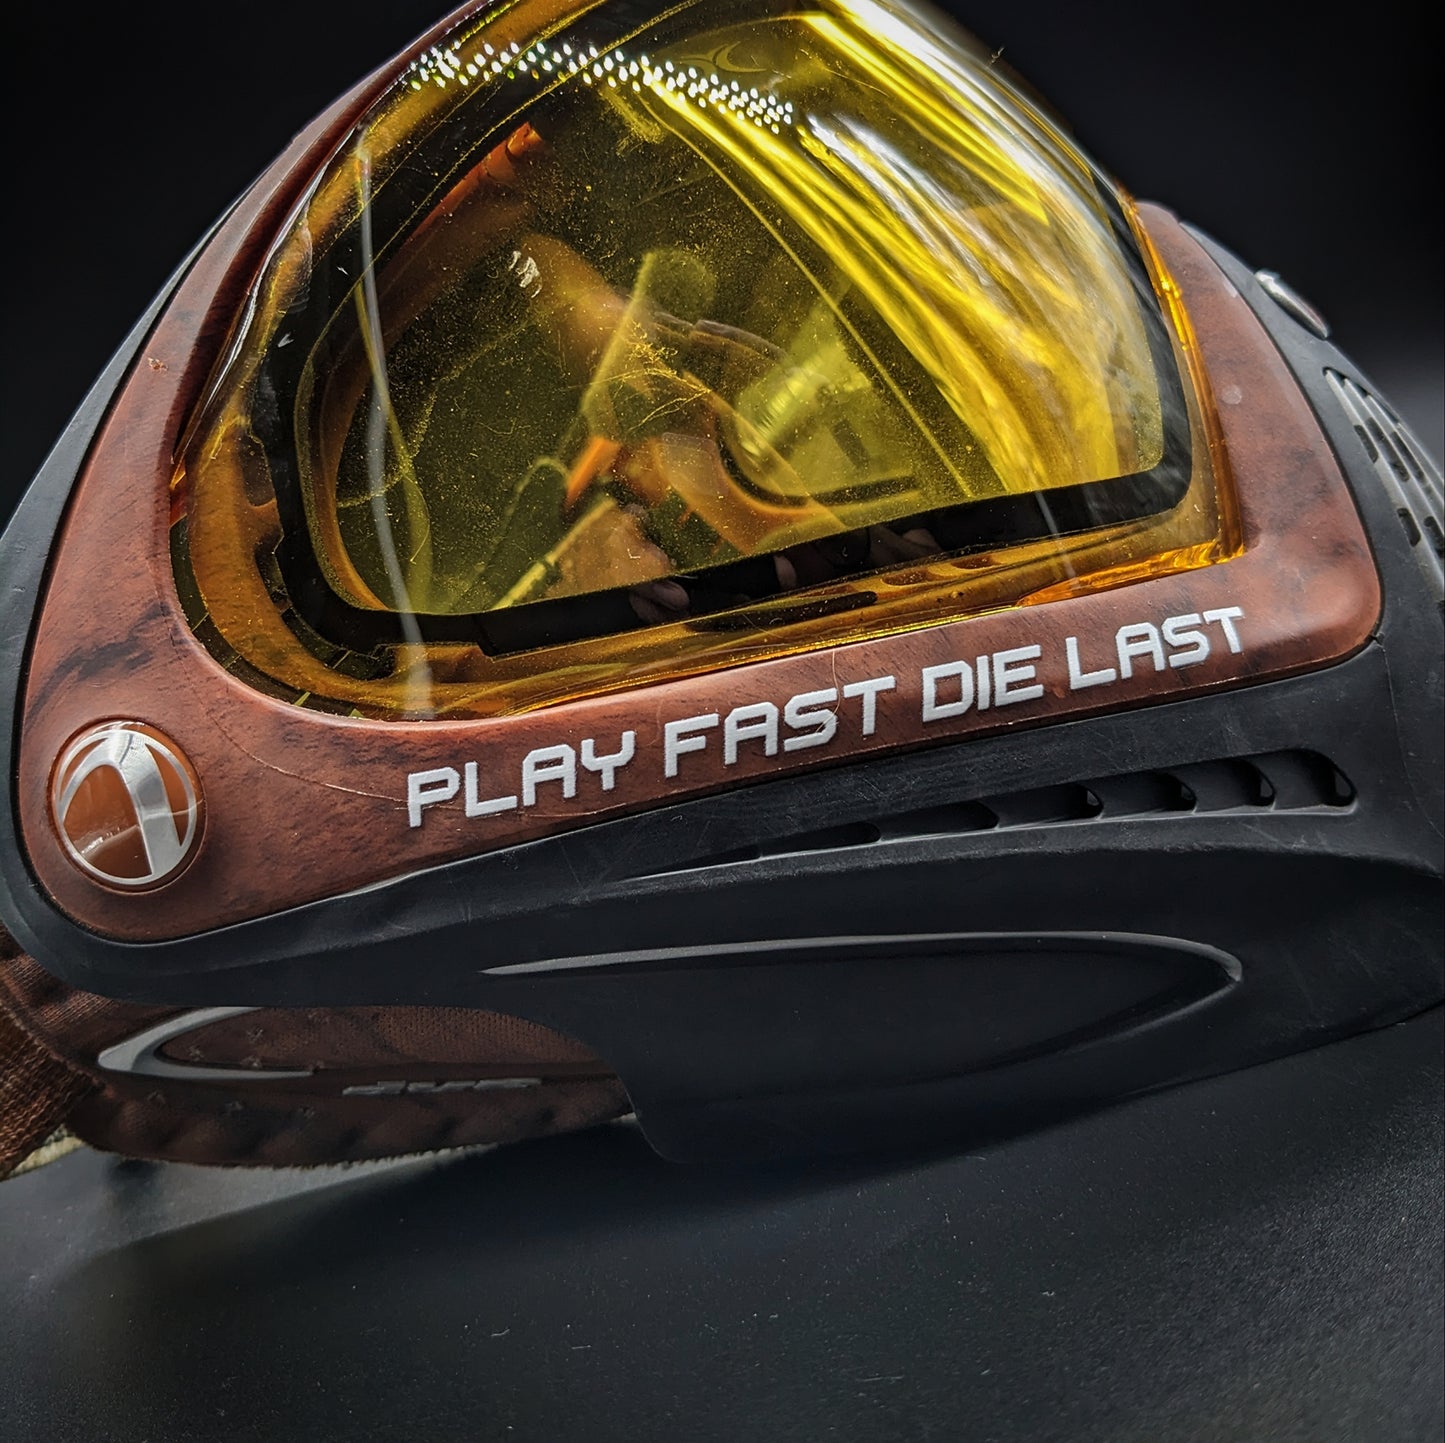 Mask Lens Decal - Play Fast Die Last